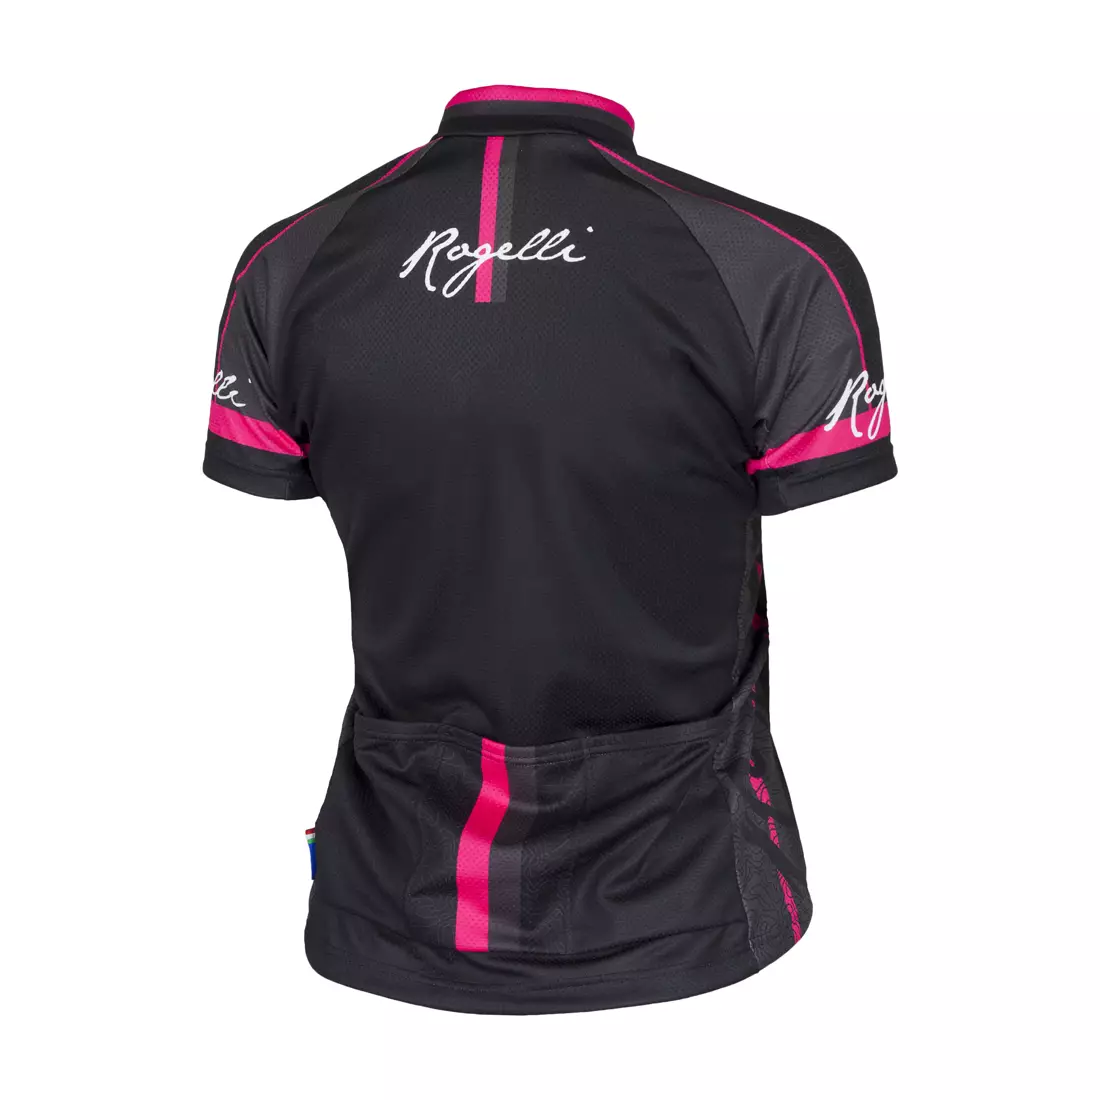 ROGELLI MANICA ROSA 010.136 női kerékpáros mez, fekete és rózsaszín